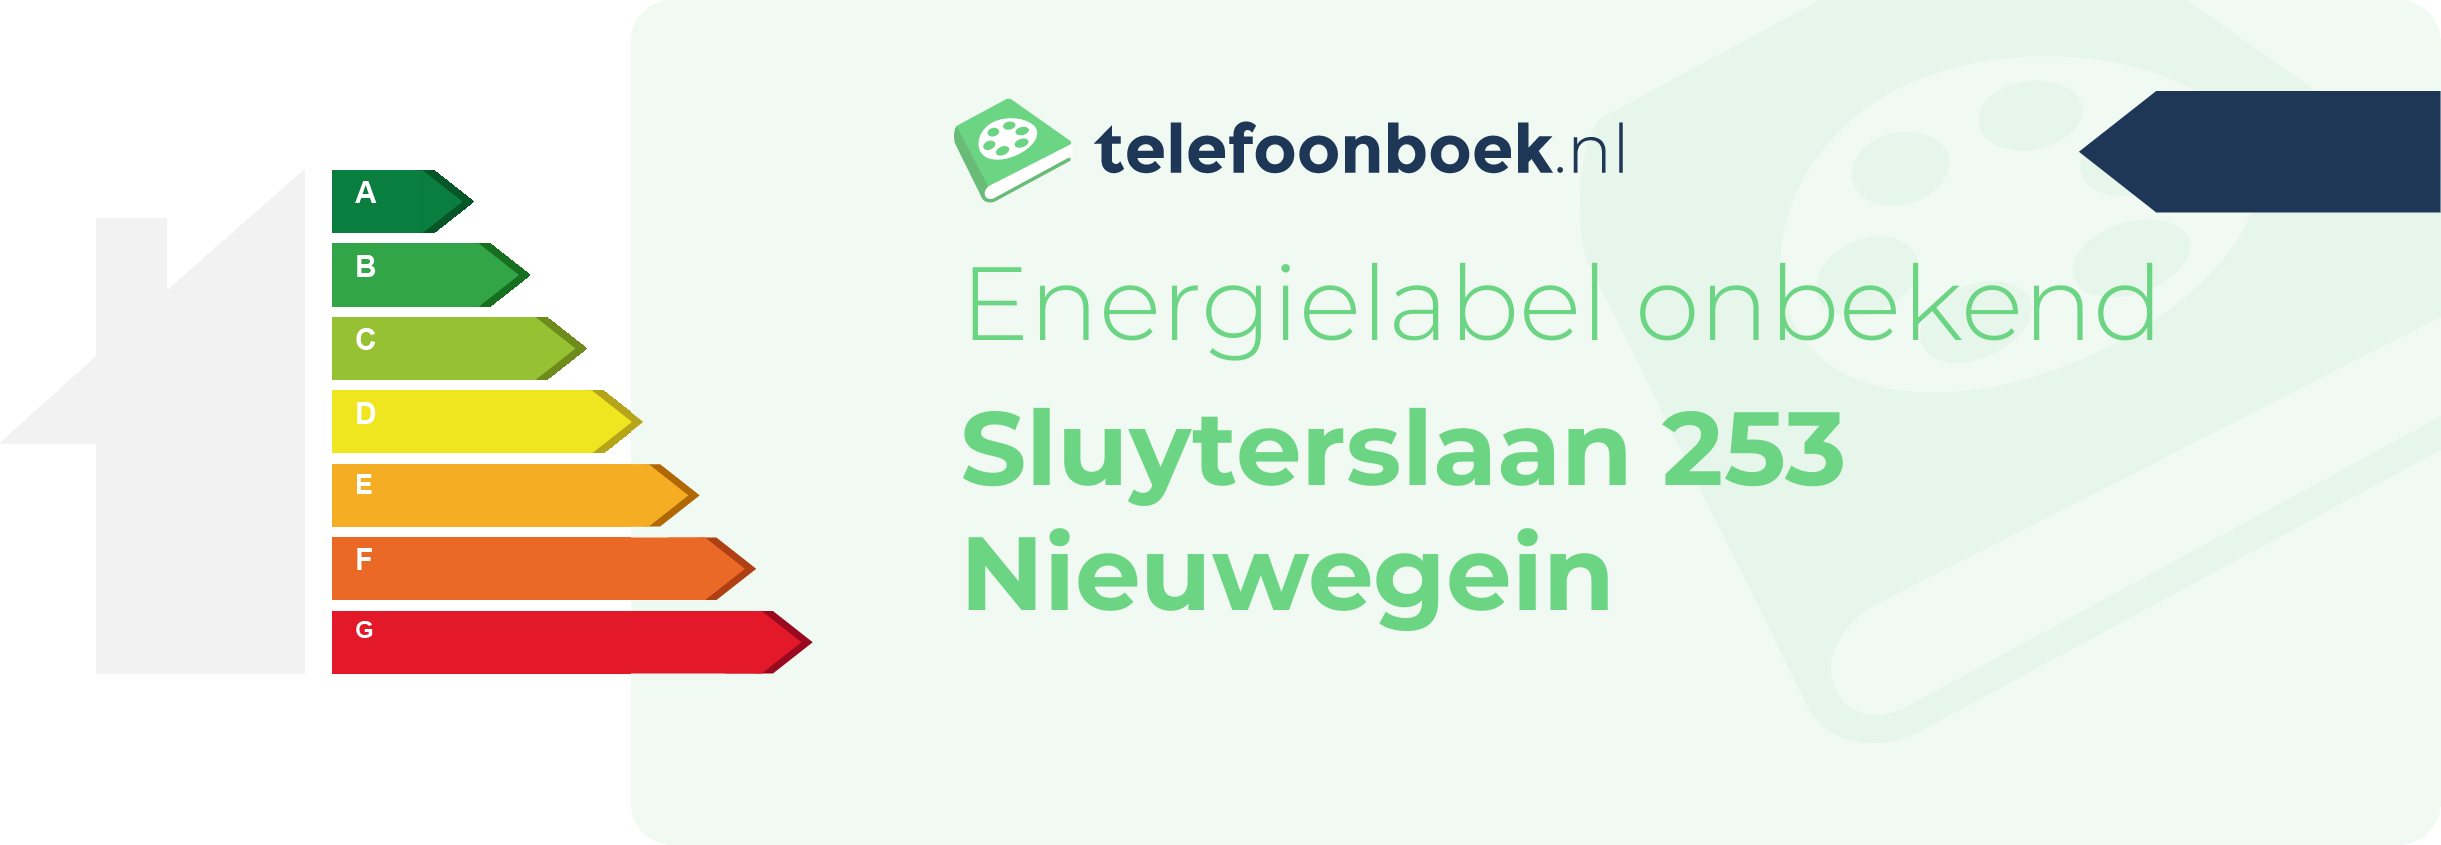 Energielabel Sluyterslaan 253 Nieuwegein